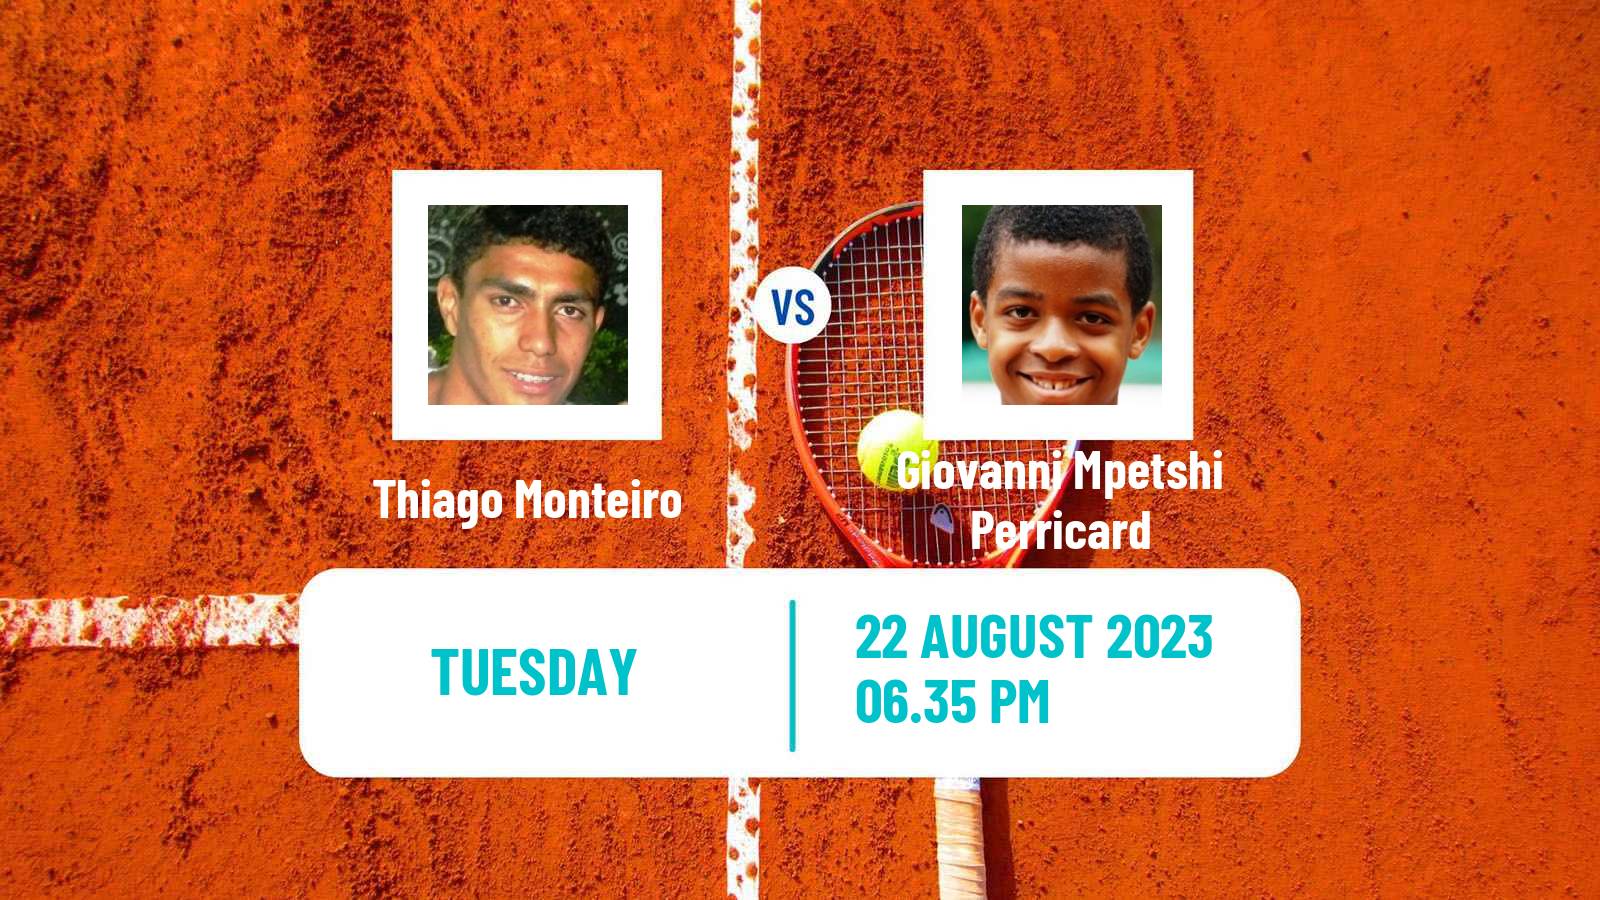 Tennis ATP US Open Thiago Monteiro - Giovanni Mpetshi Perricard